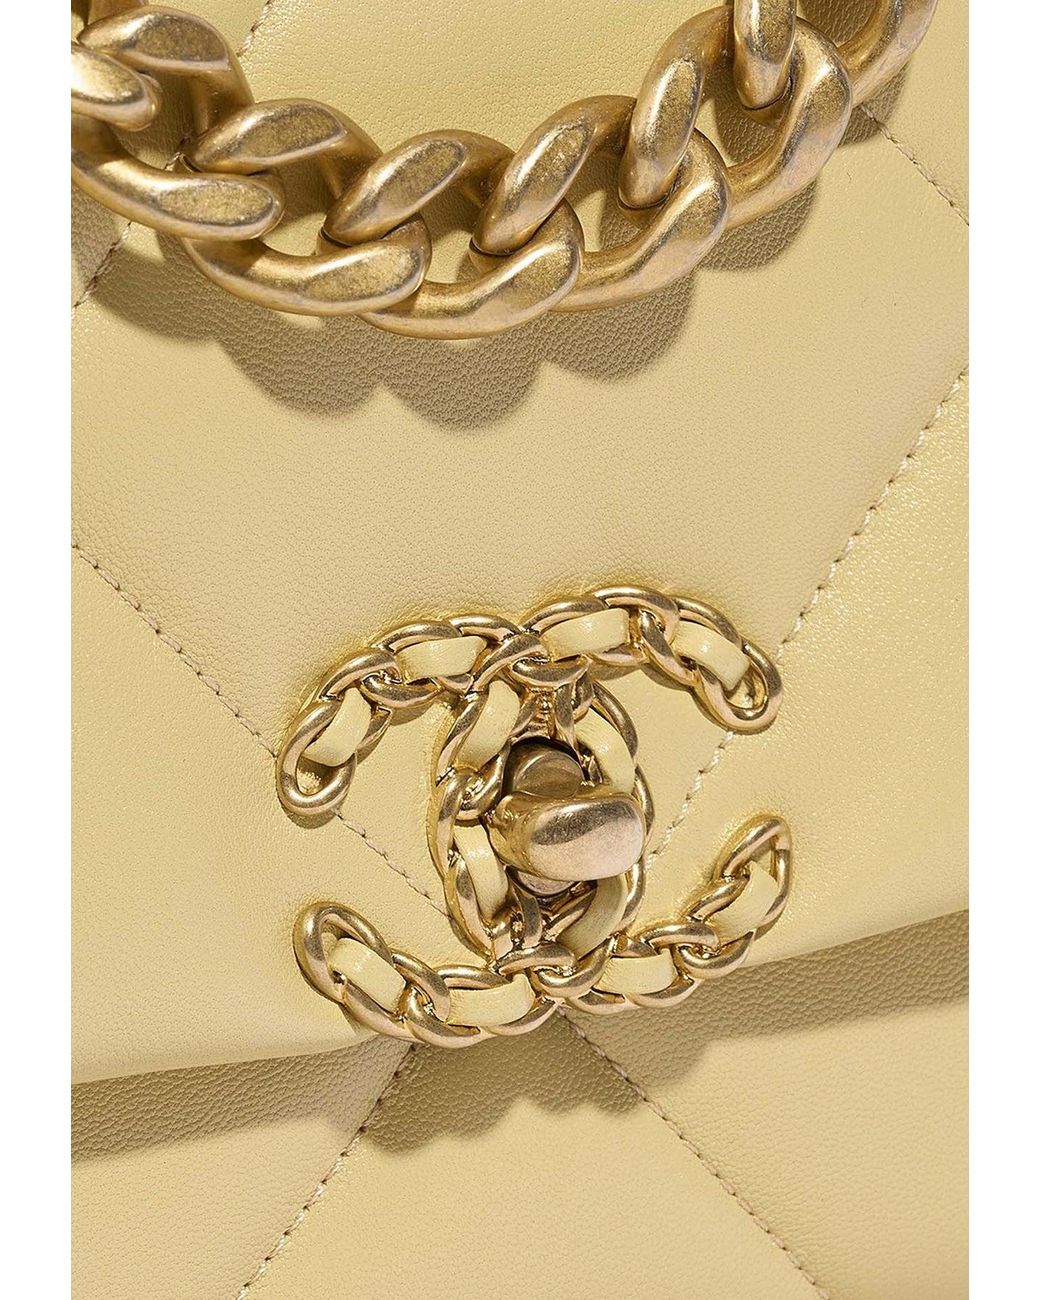 Chanel Metallic Lambskin Quilted Top Handle Vanity Case Gold